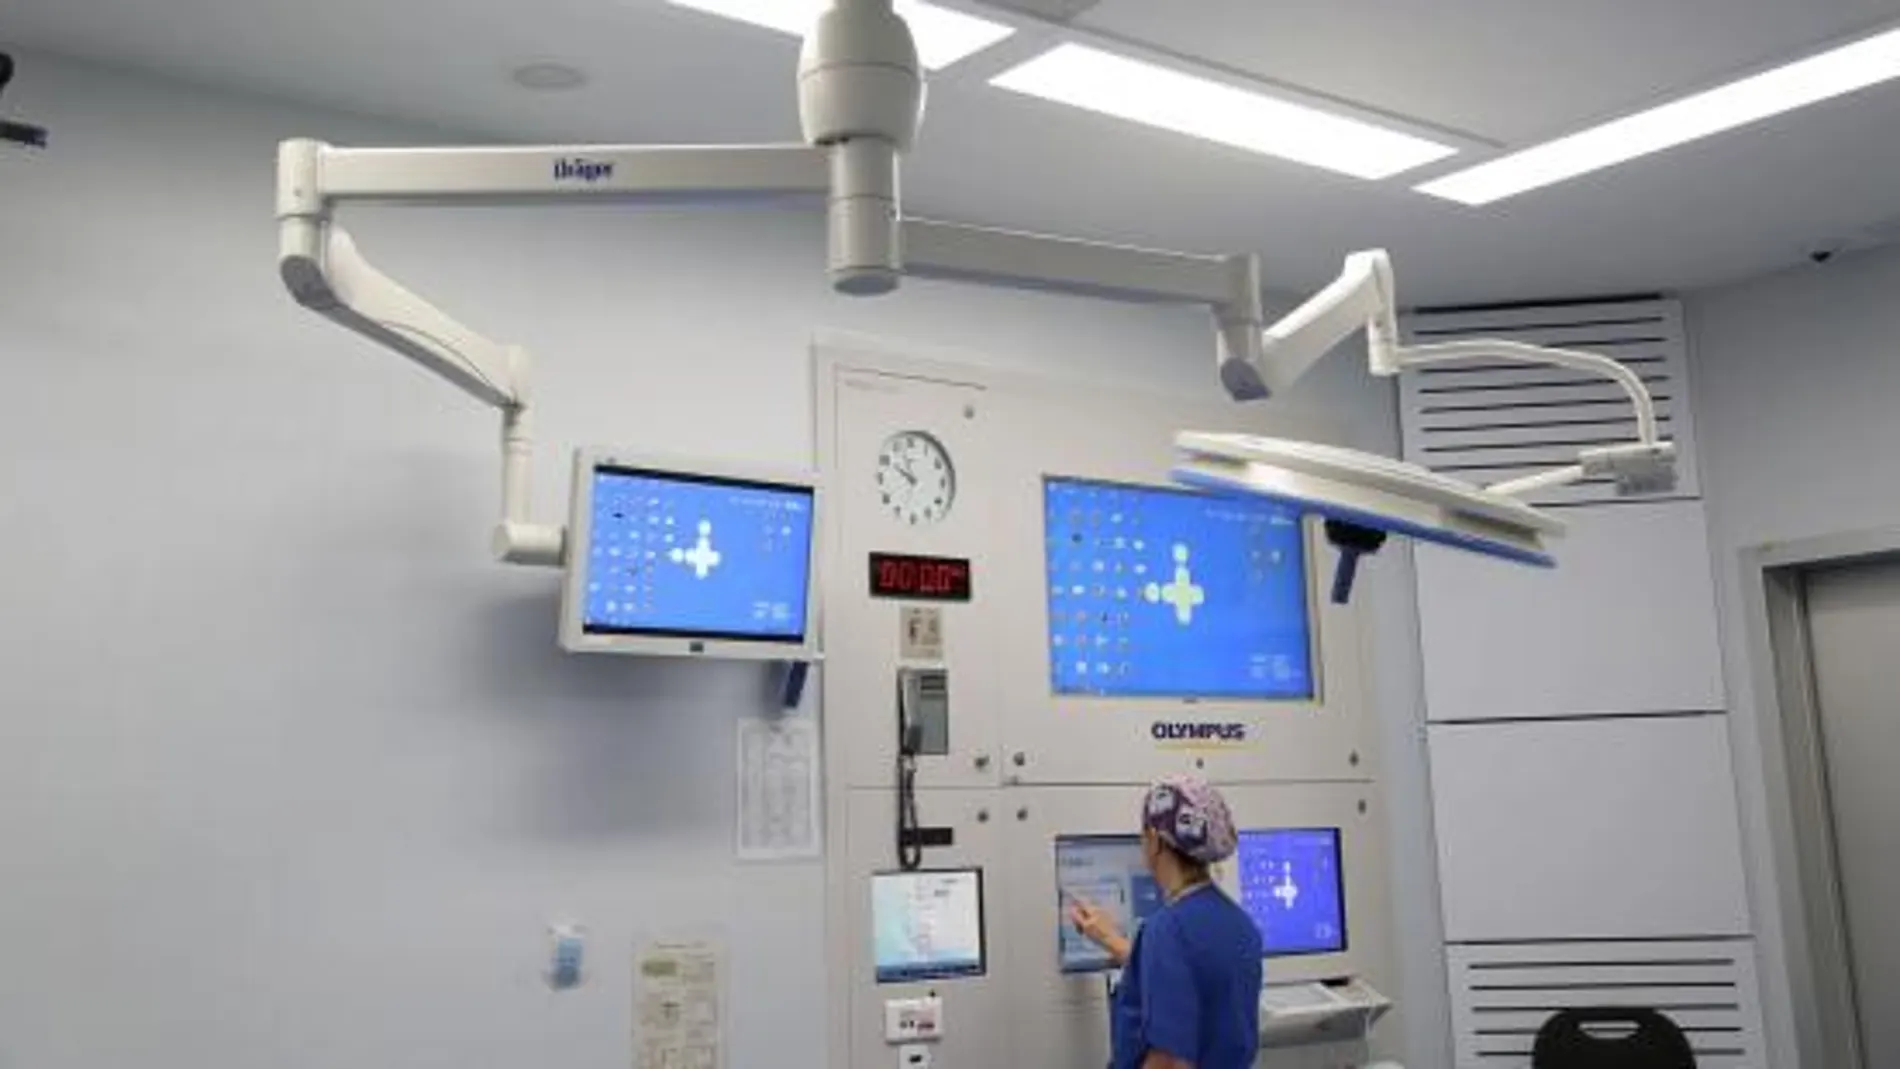 Vall d'Hebron impulsa la transformación digital para mejorar la experiencia del paciente con la ayuda de los fondos FEDER